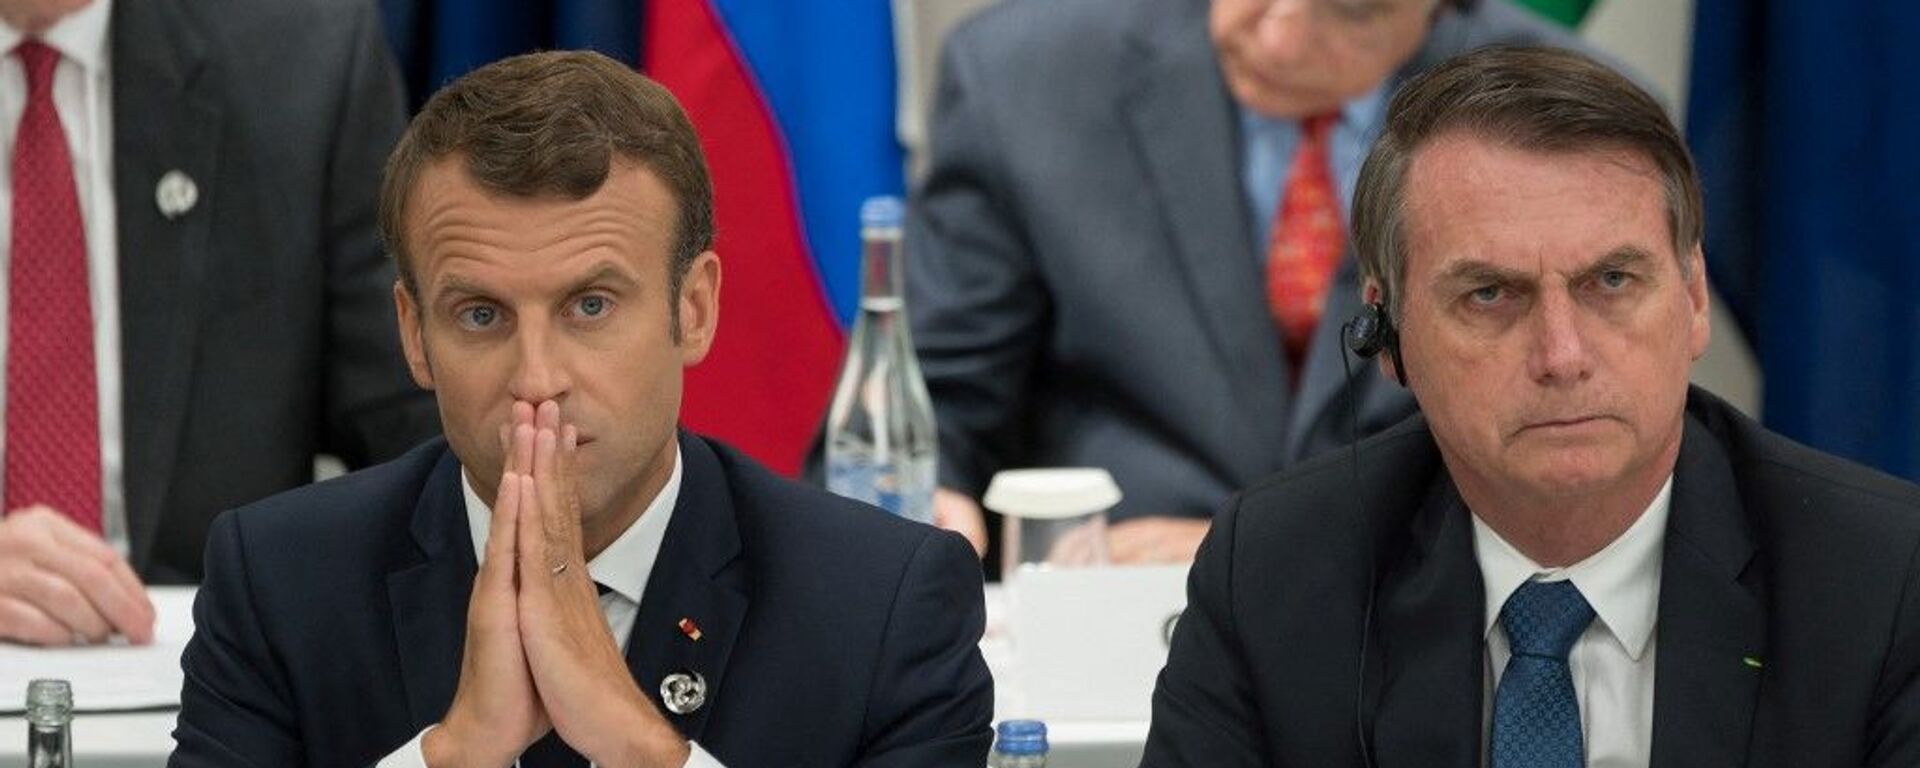 O presidente francês, Emmanuel Macron, ao lado do presidente brasileiro, Jair Bolsonaro, durante cúpula do G20 em 2019, no Japão - Sputnik Brasil, 1920, 15.04.2022